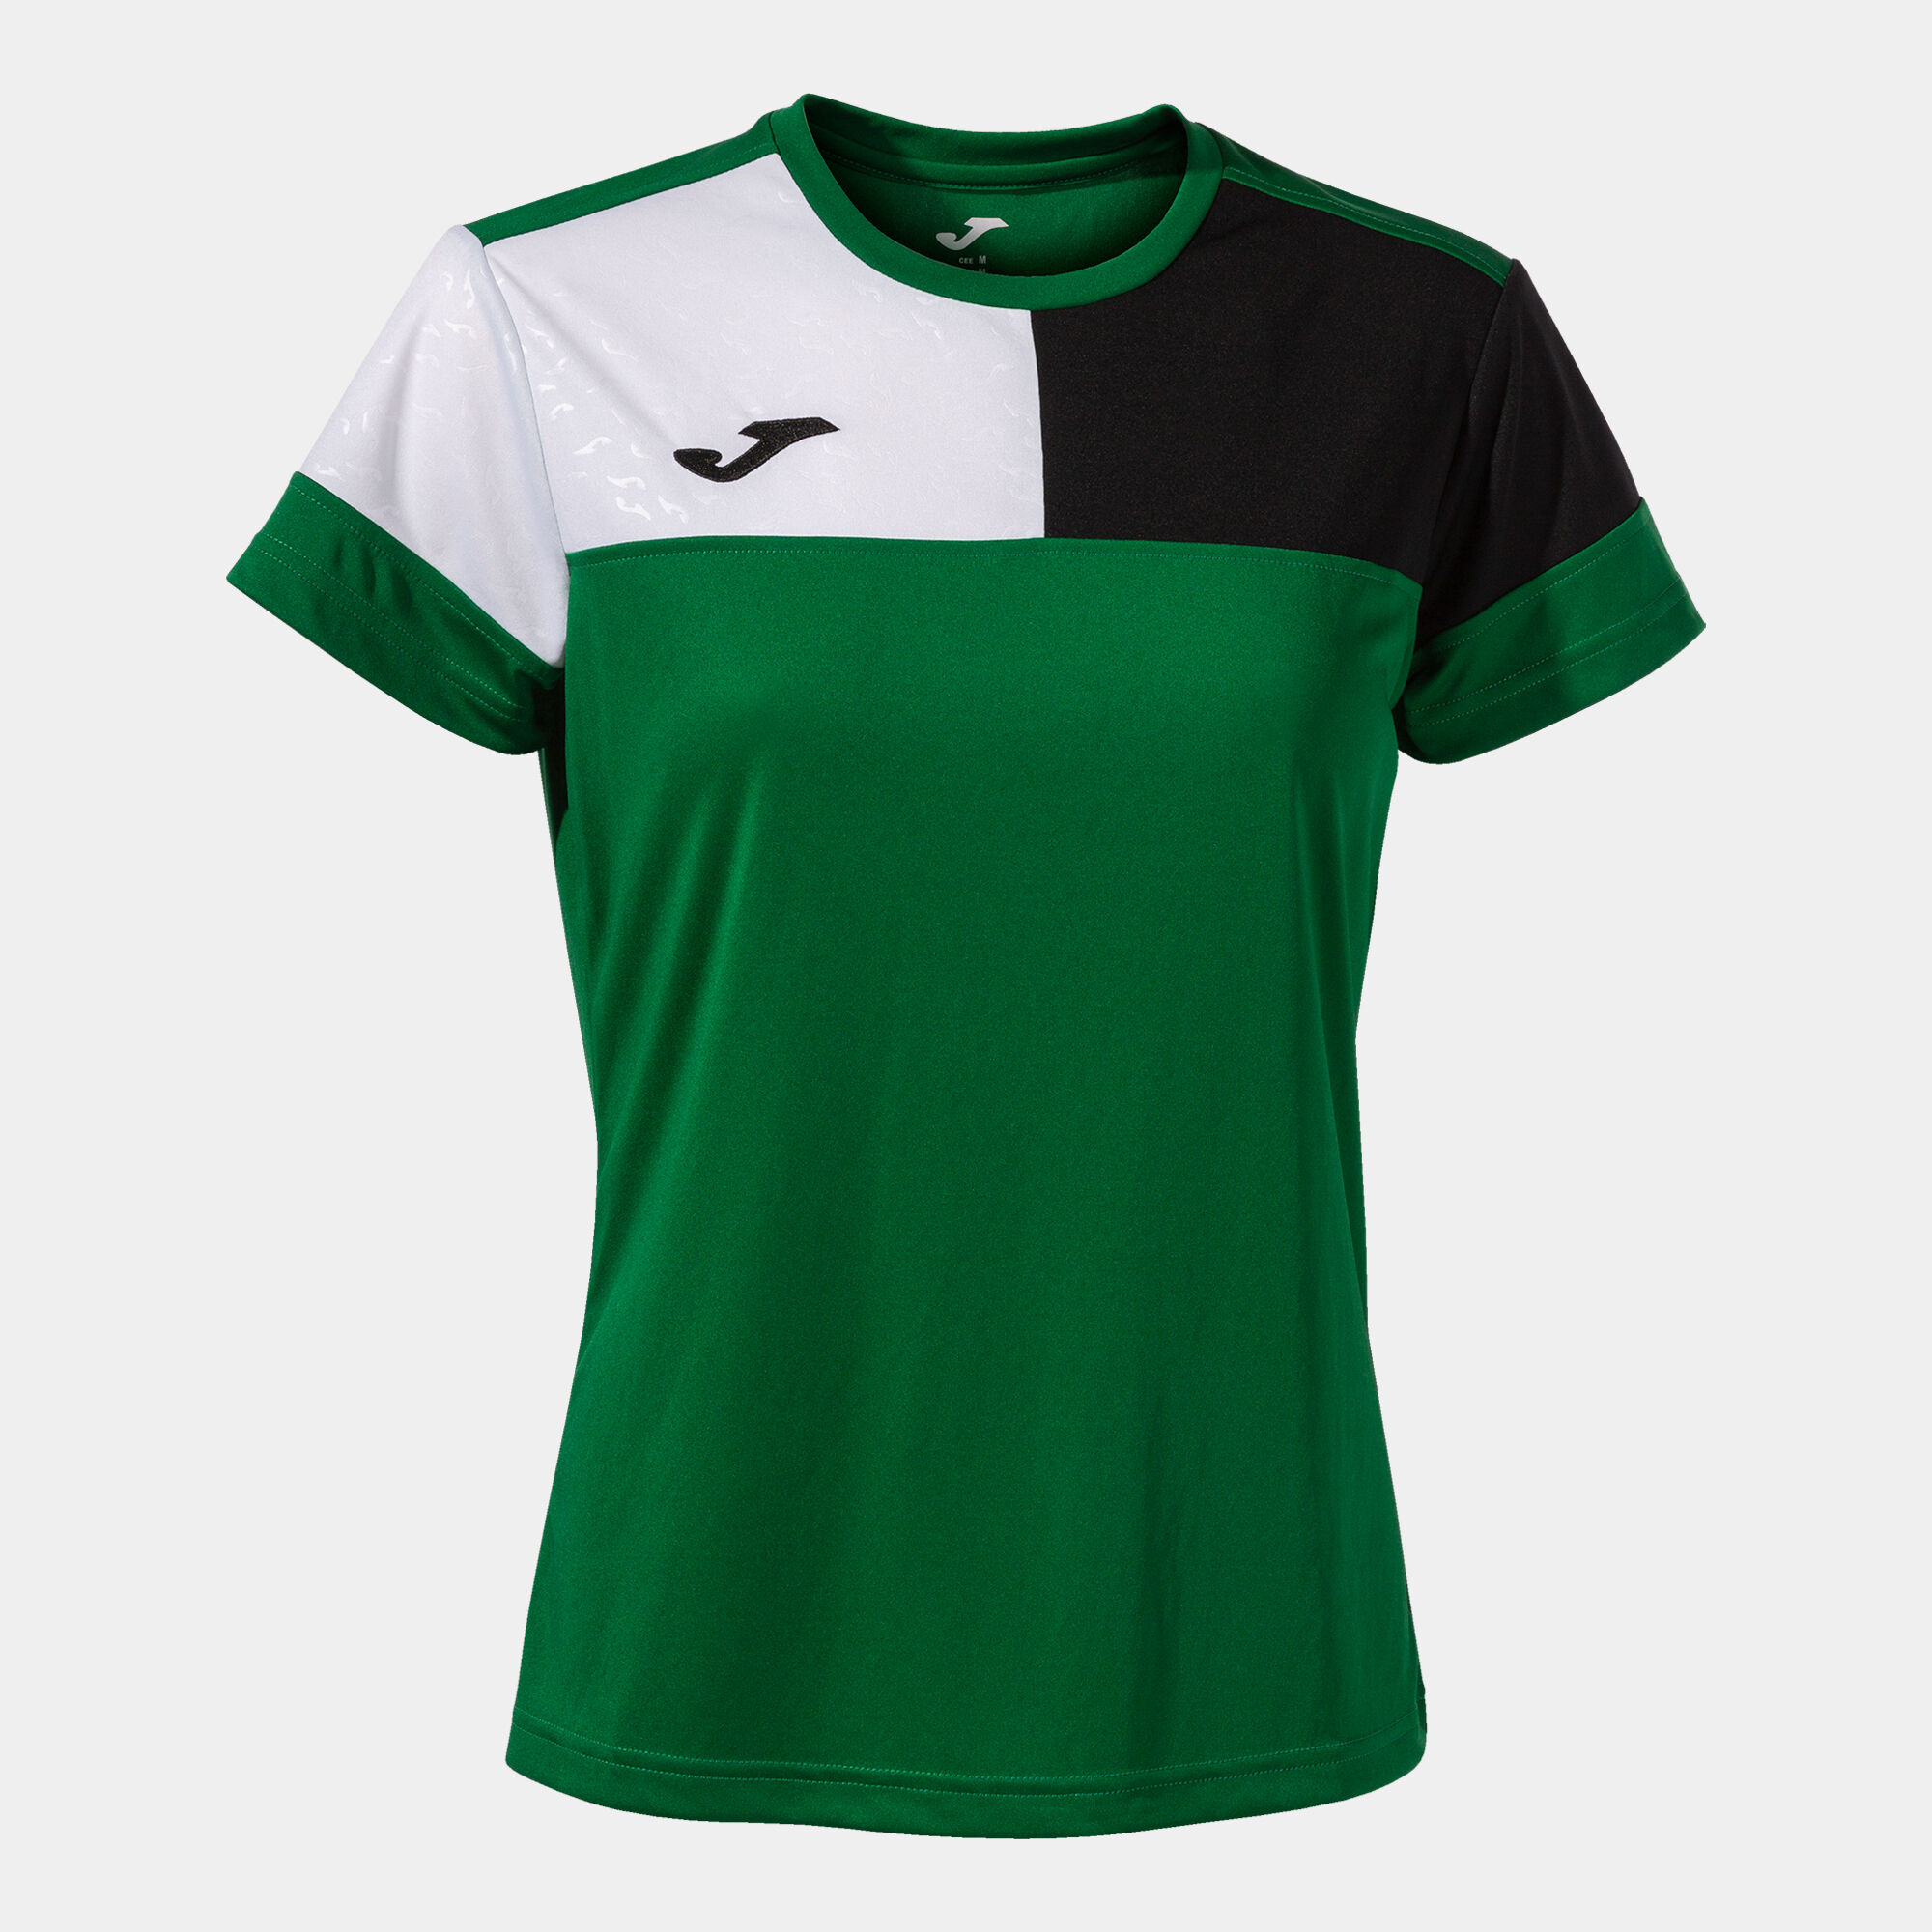 Camiseta manga corta mujer Crew V verde negro blanco